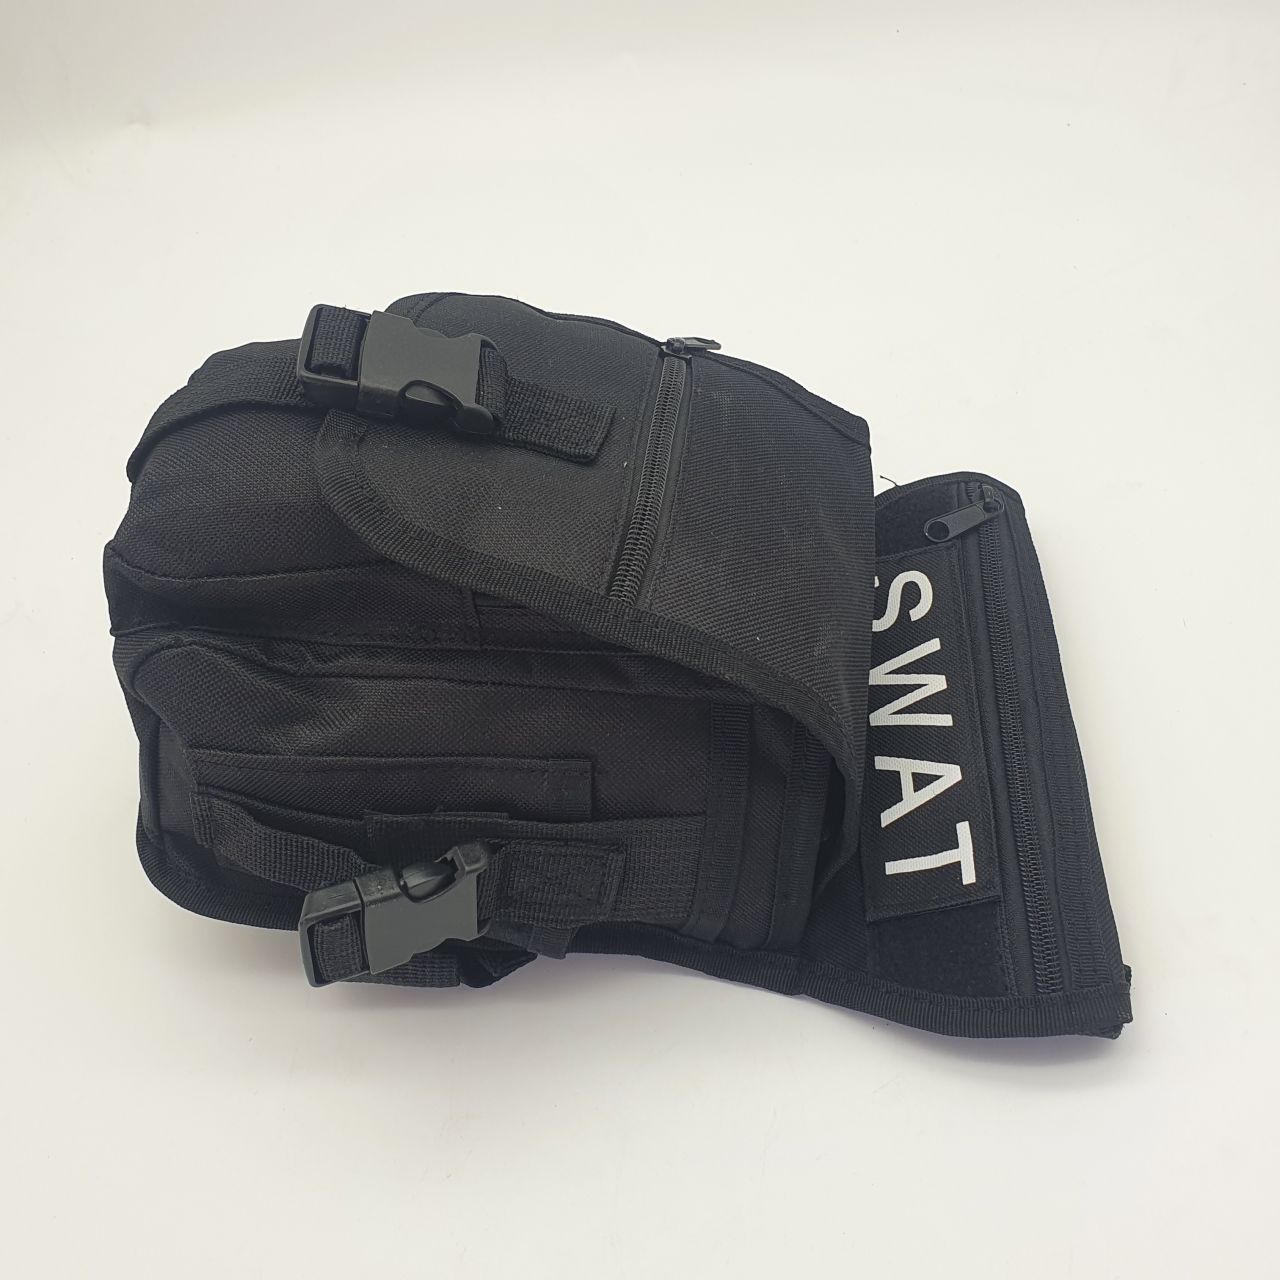 SWAT torbica oko noge crna